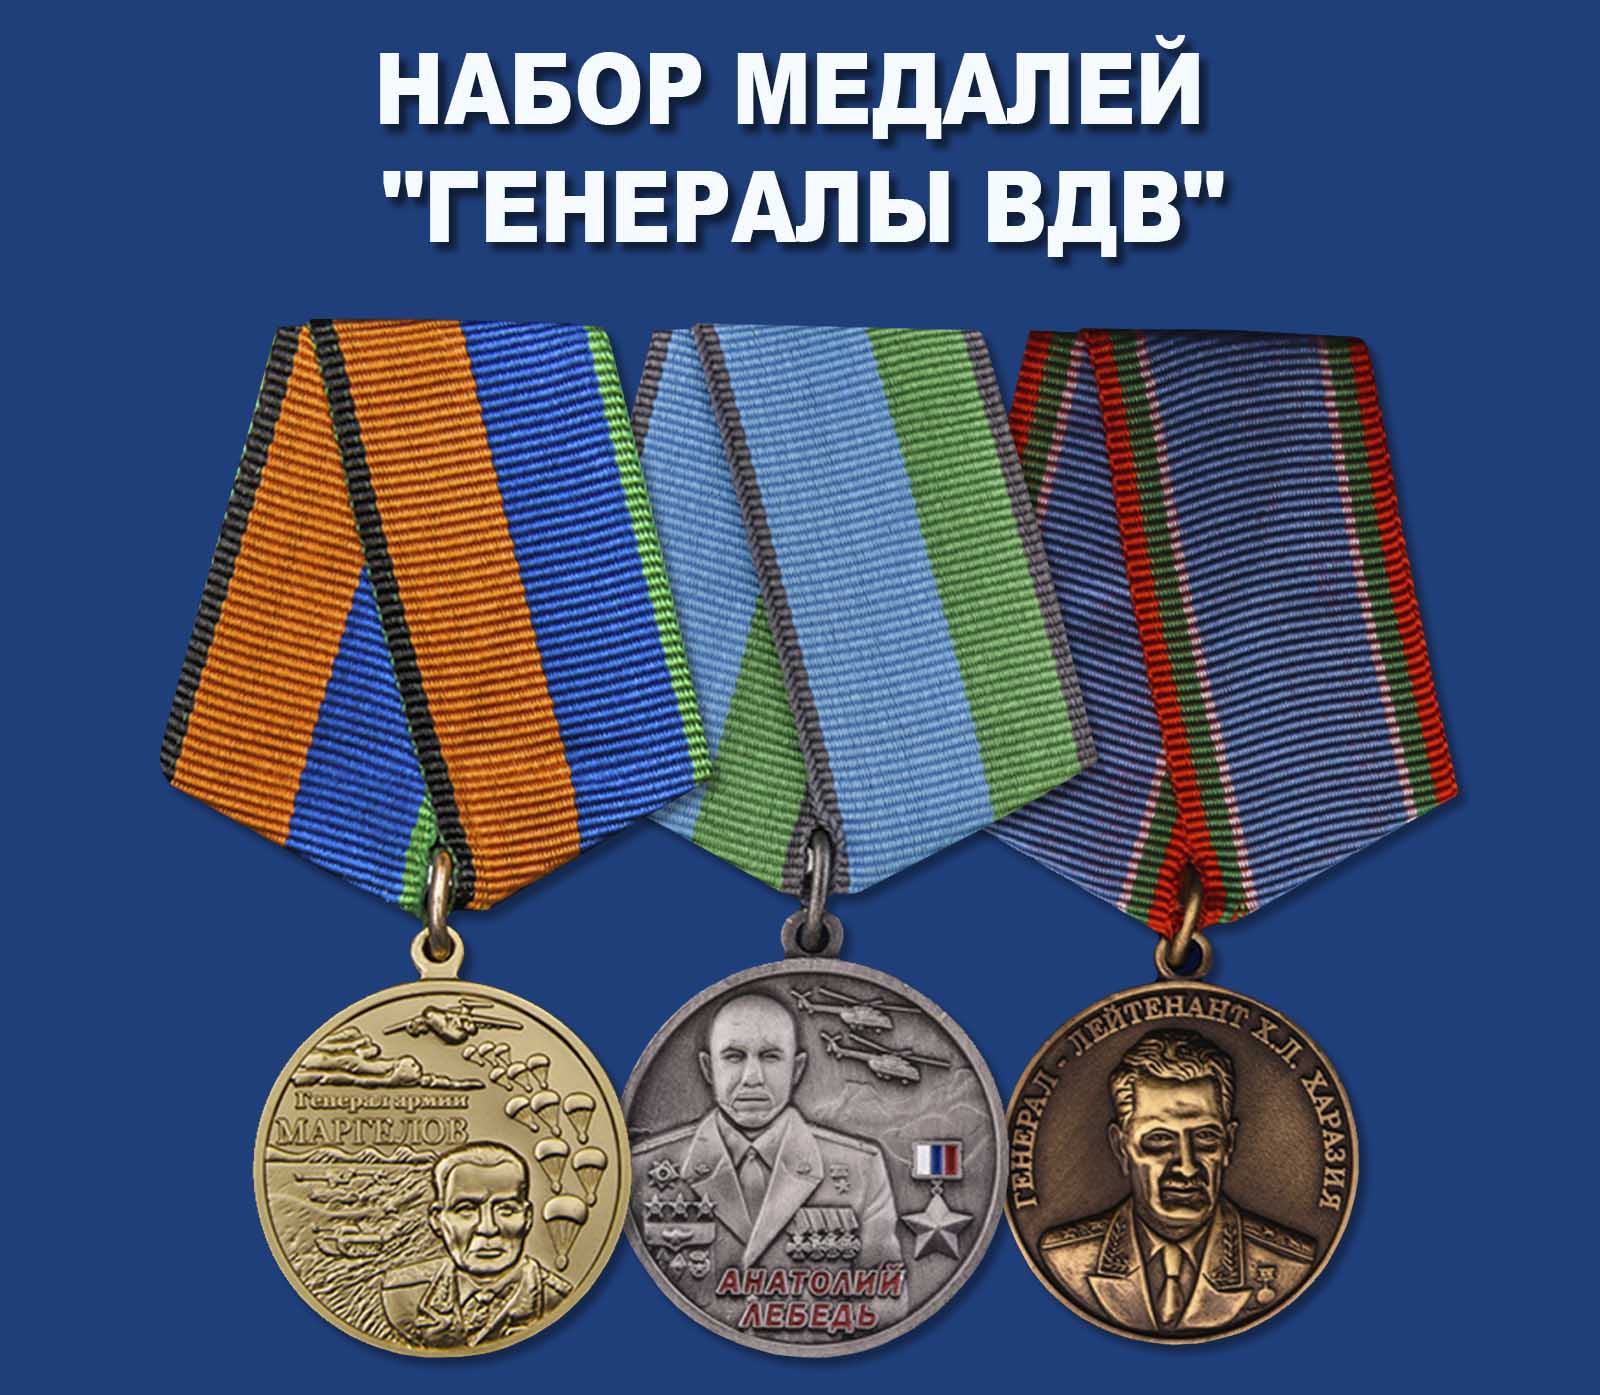 Купить набор медалей "Генералы ВДВ"